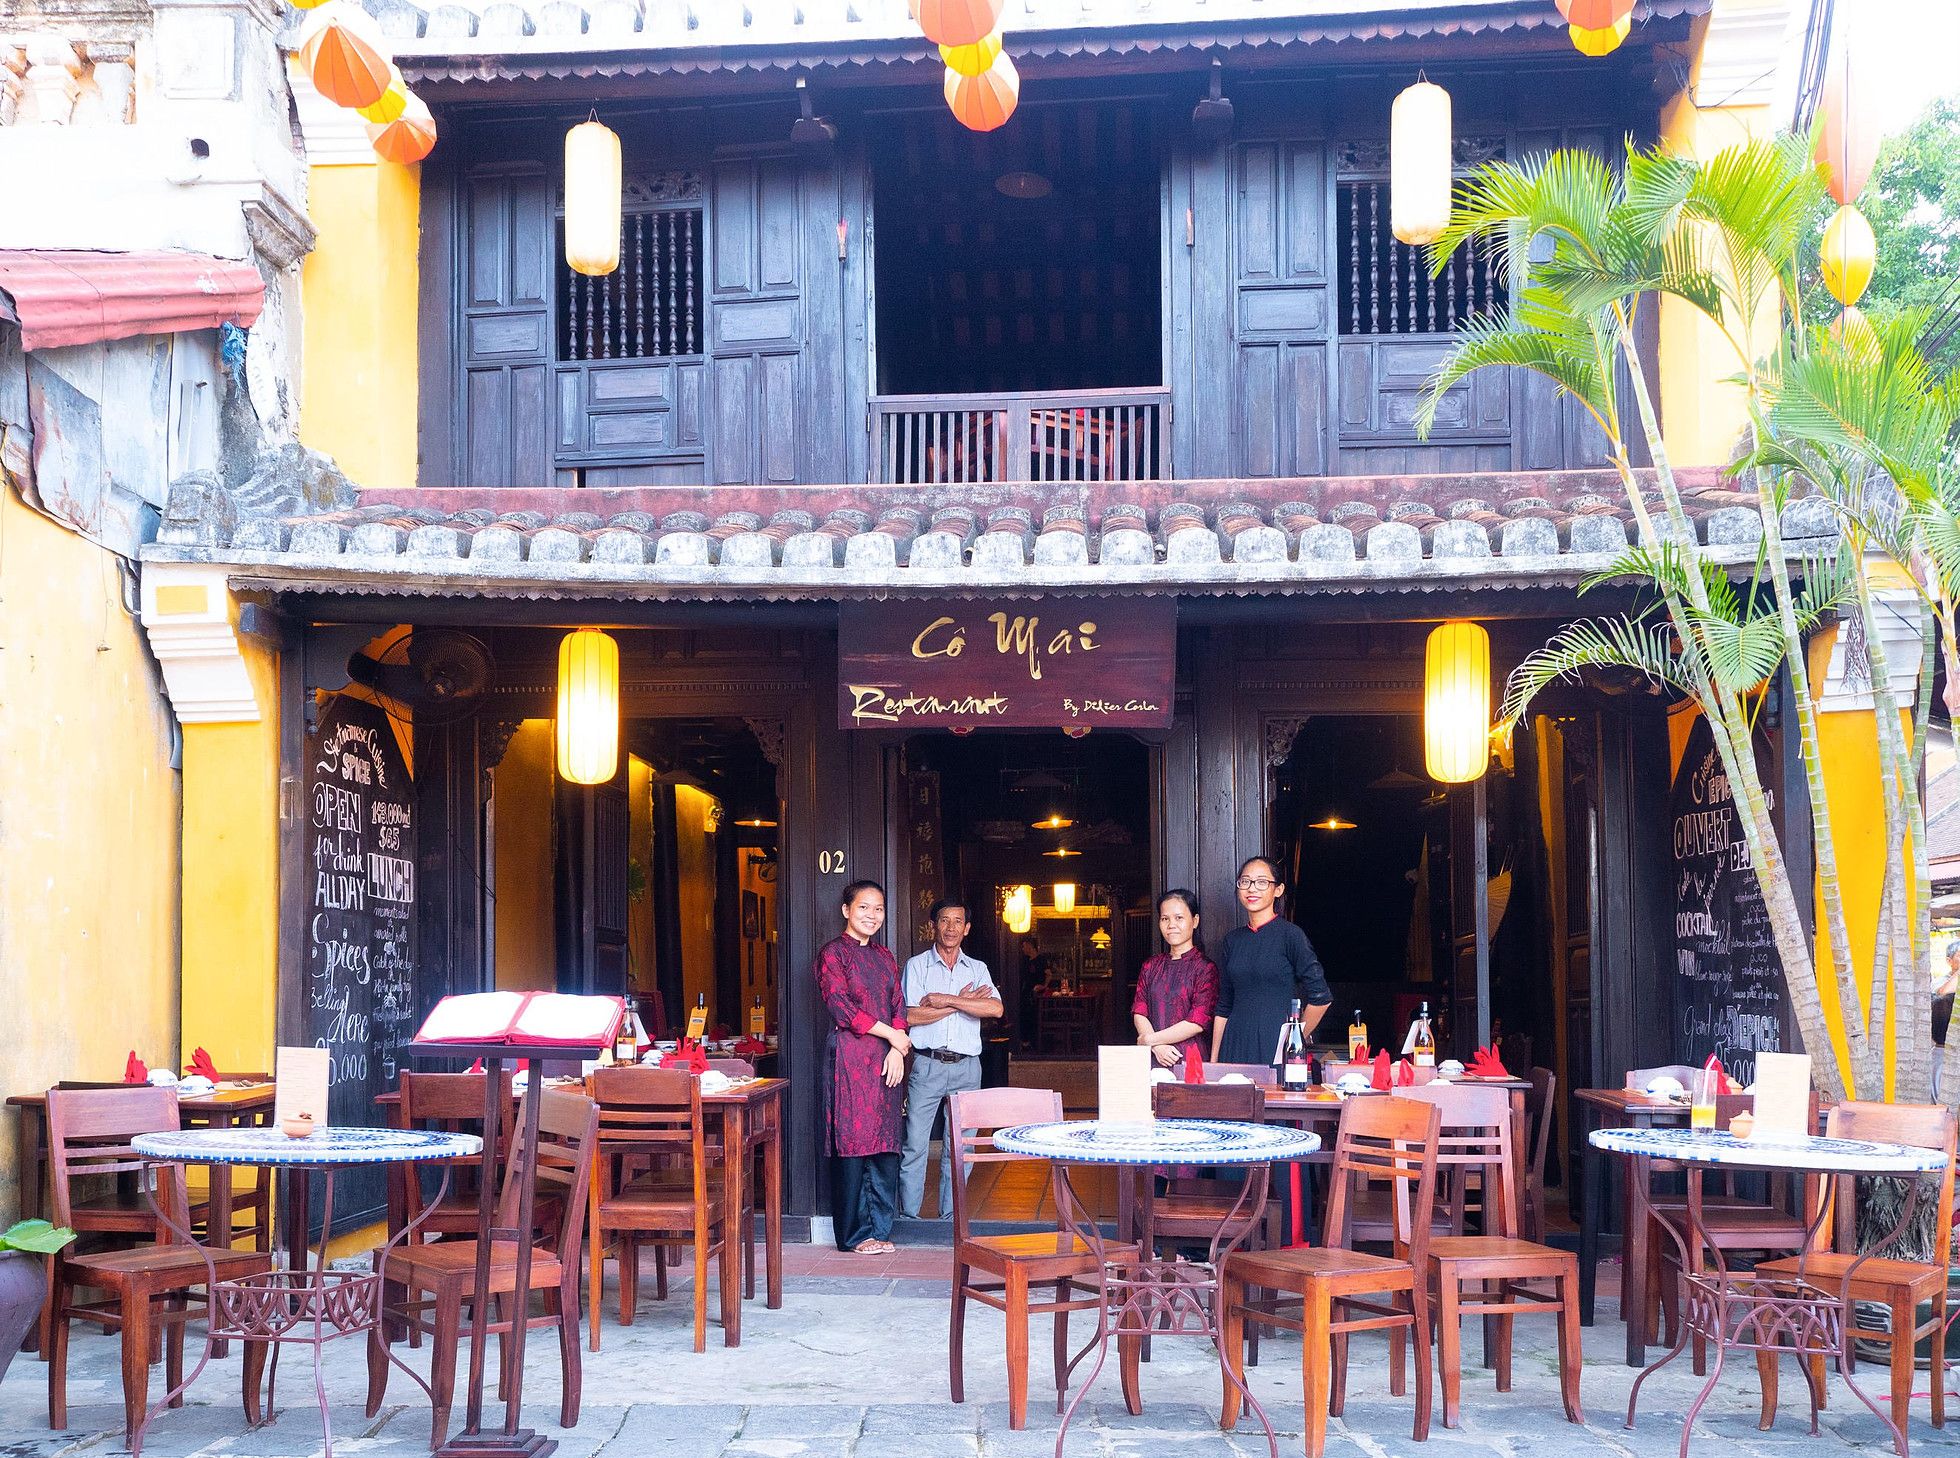 Co Mai restaurant in Hoi An